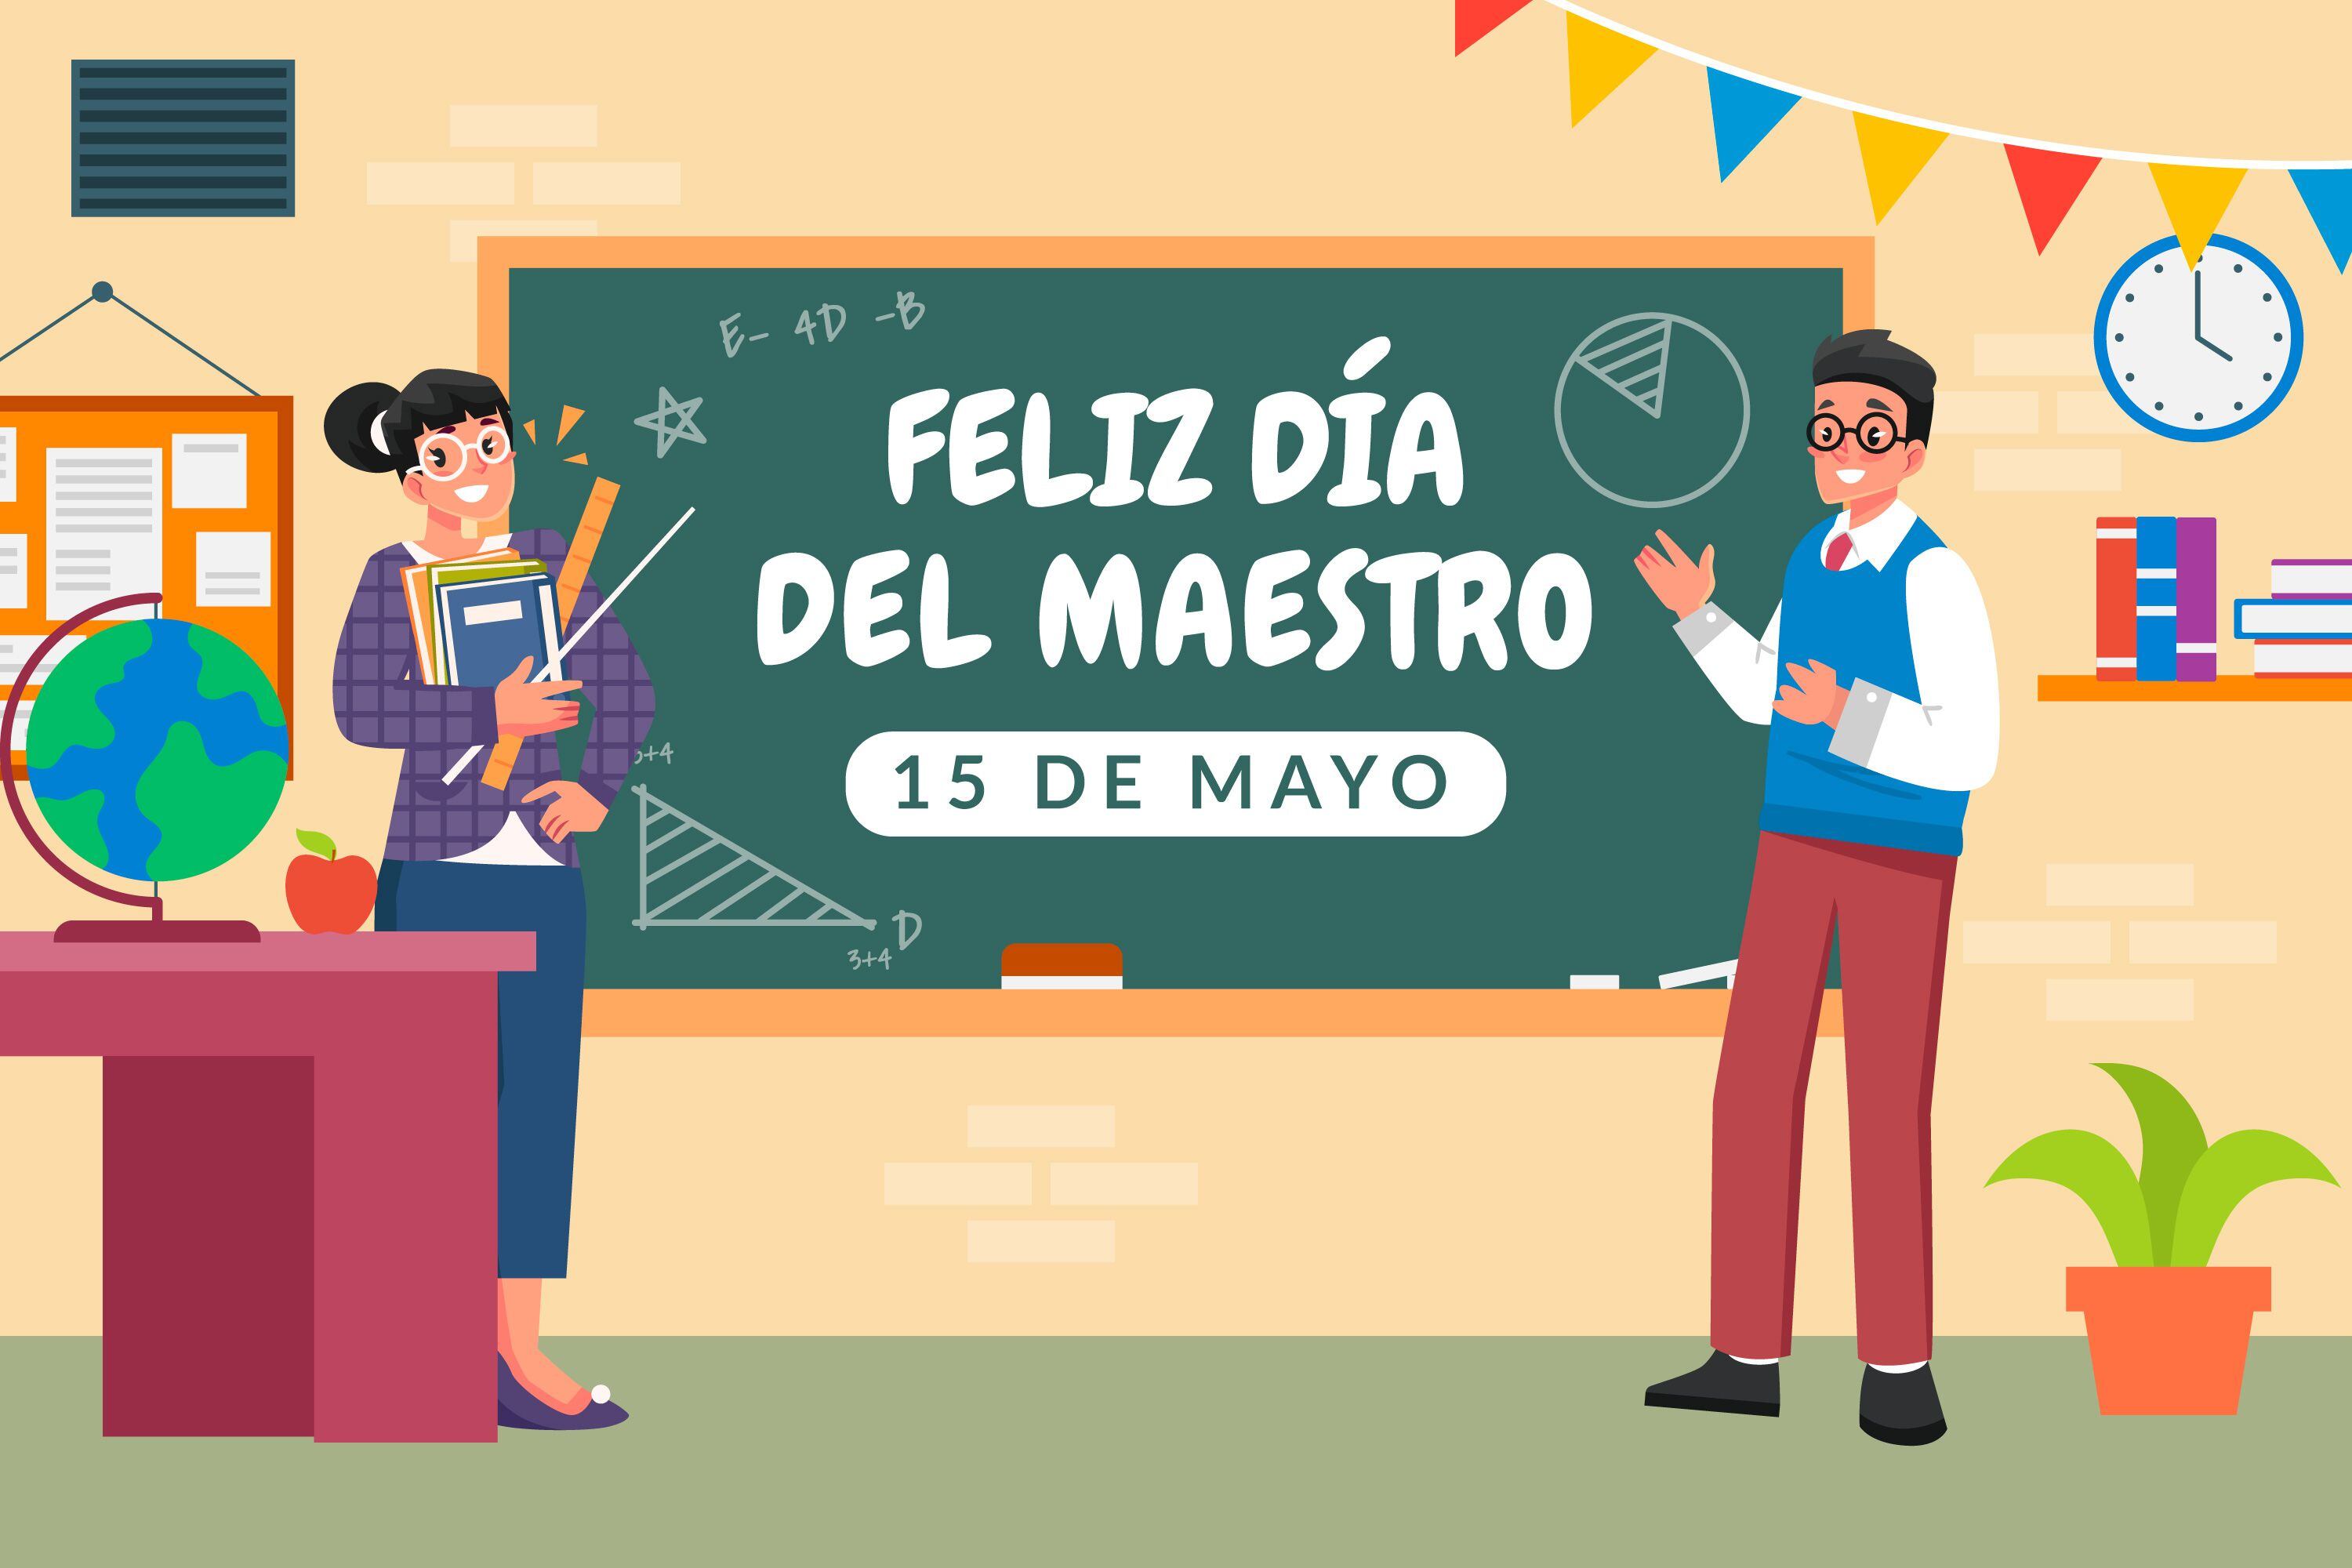 FRASES | Envía un saludo bonito en el Día del Maestro en México este 15 de mayo. (Freepik)